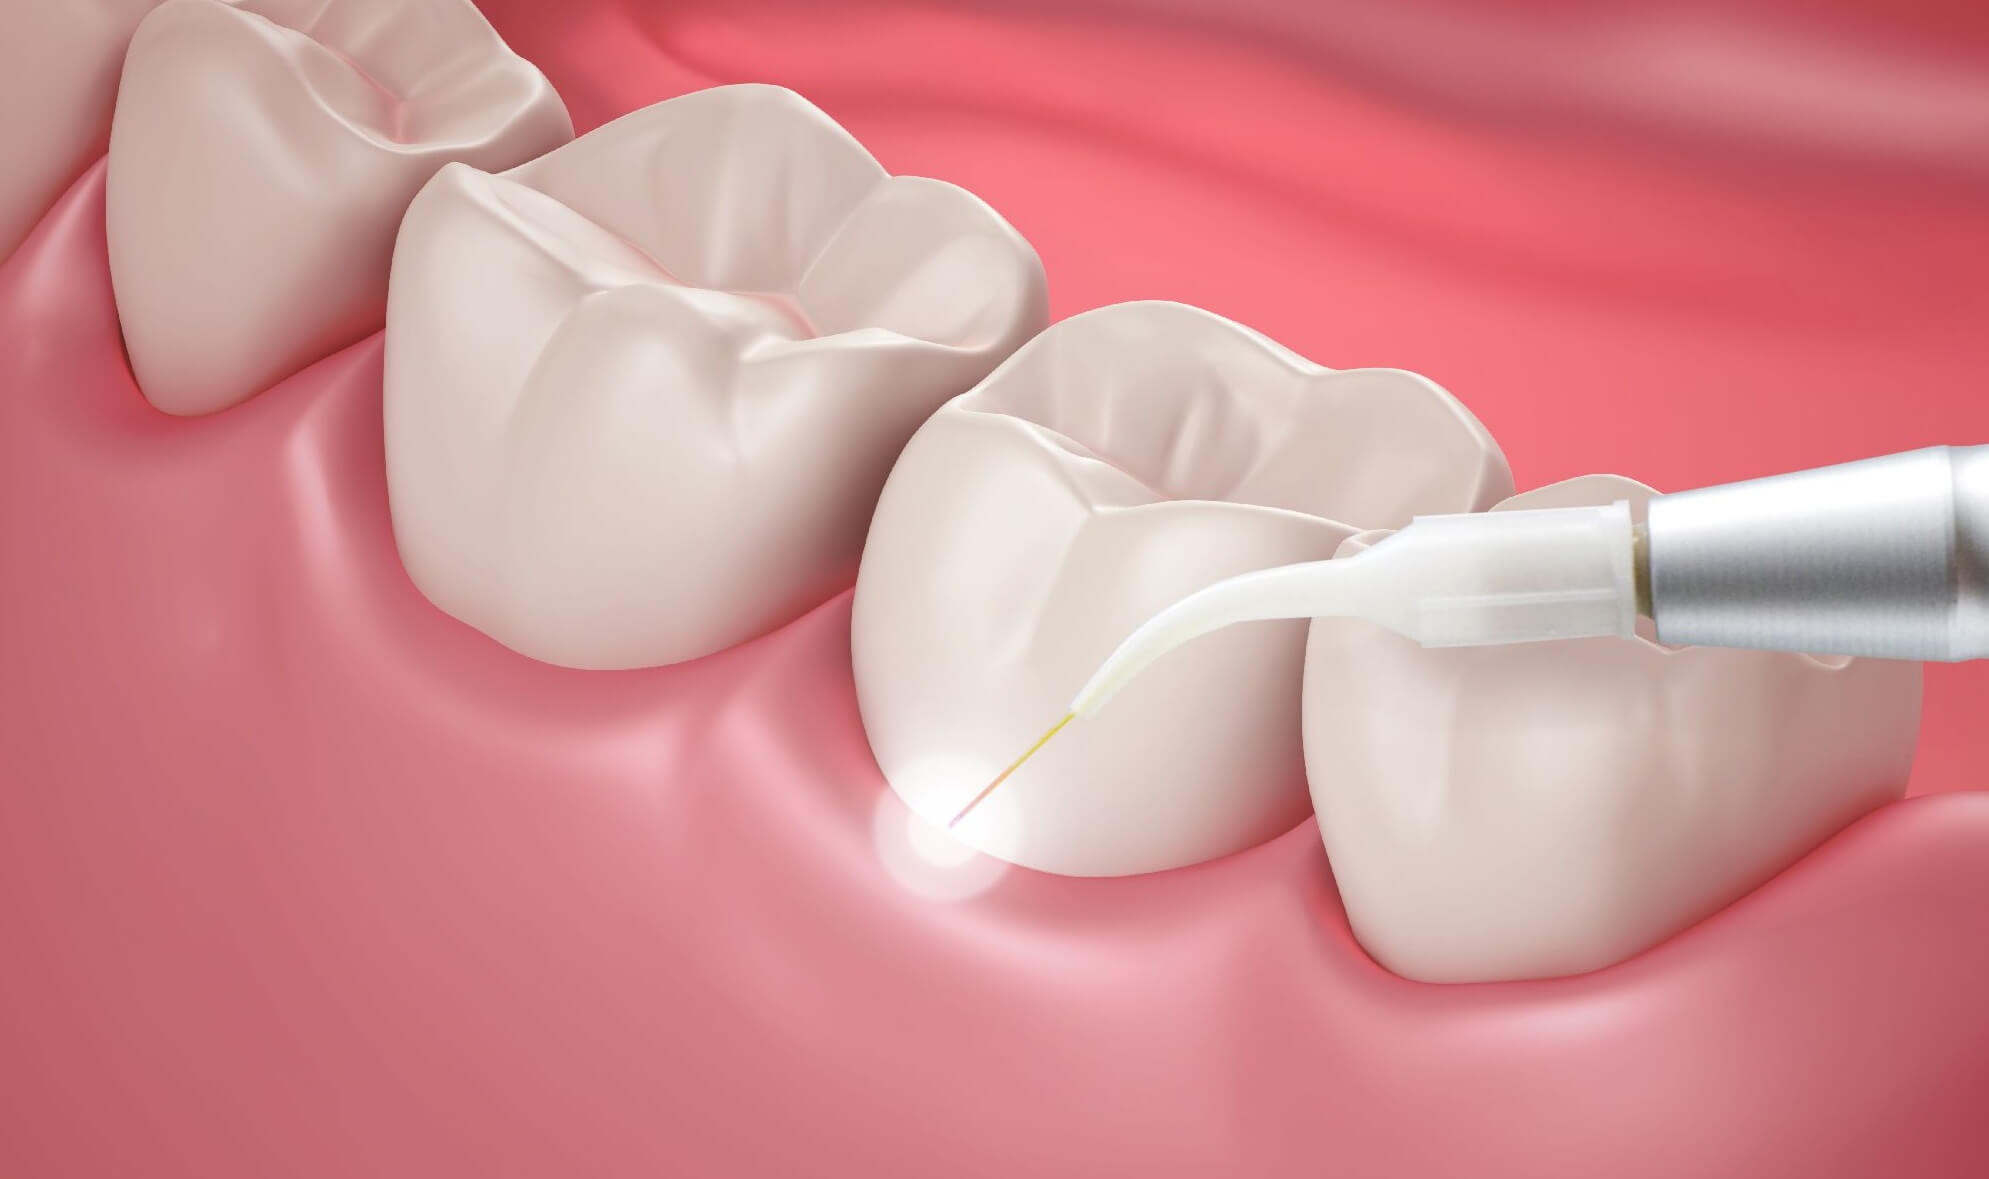 Снятие зубных отложений скейлером (1 зуб)